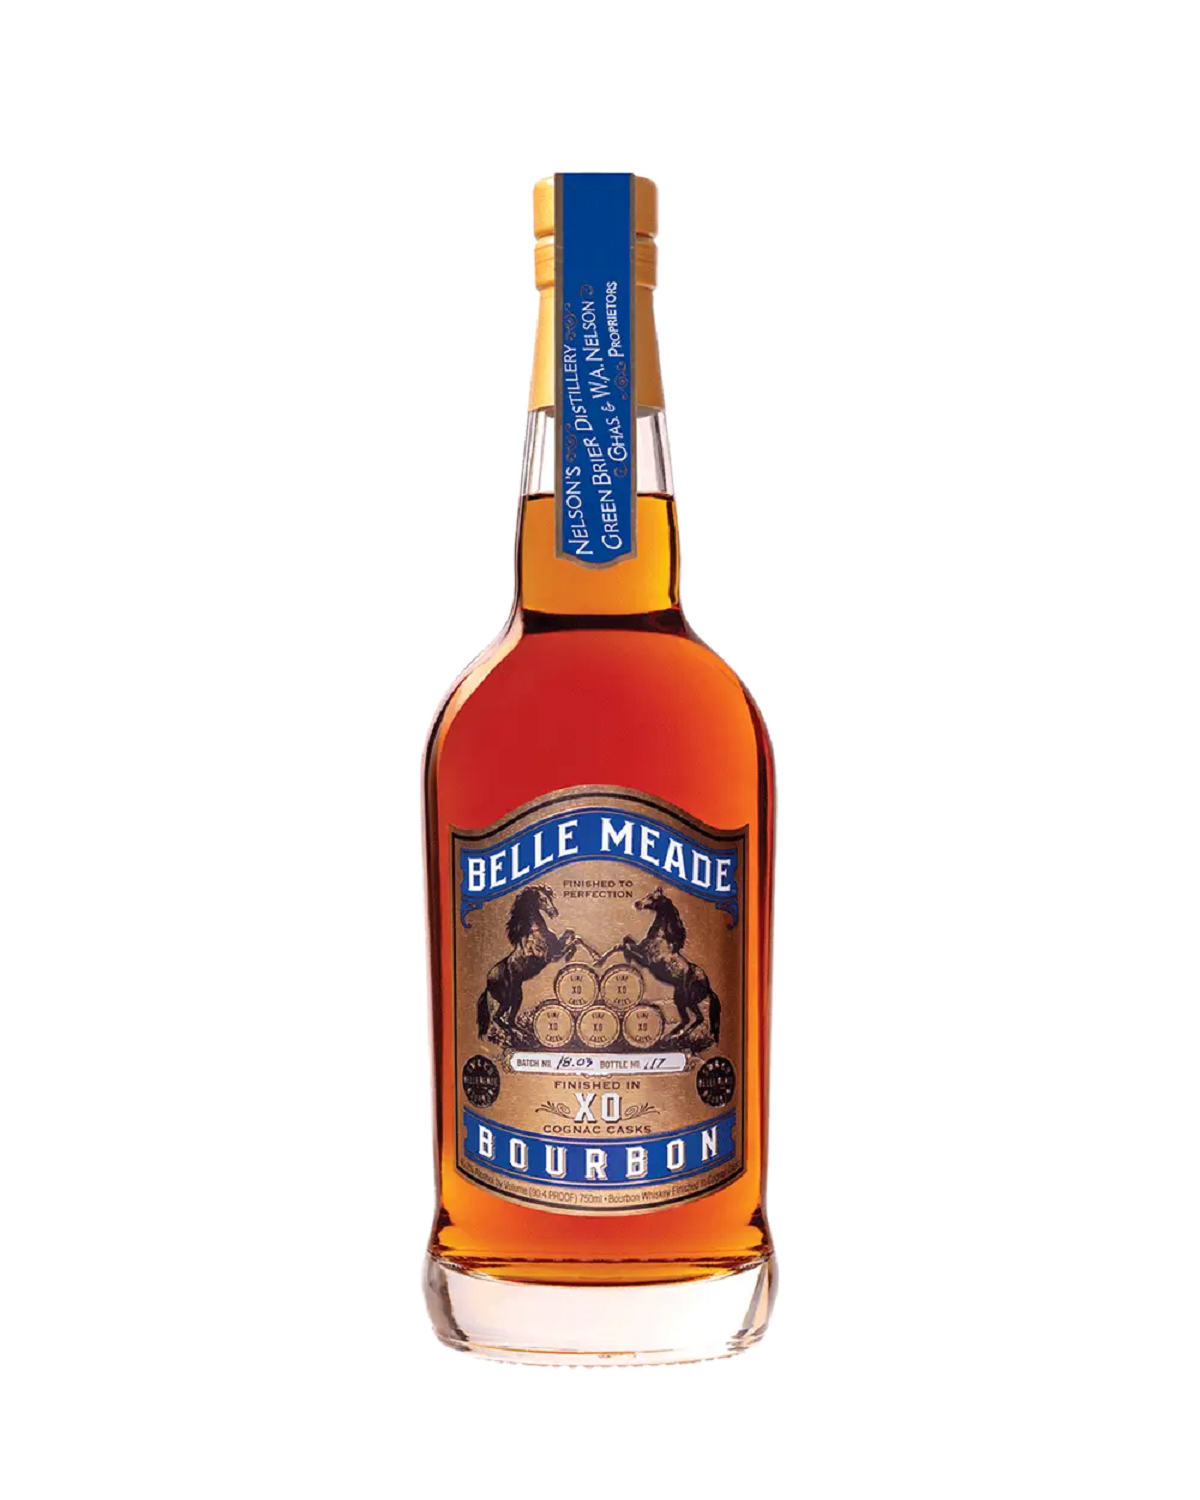 Belle Meade Bourbon Finished In XO Cognac Cask